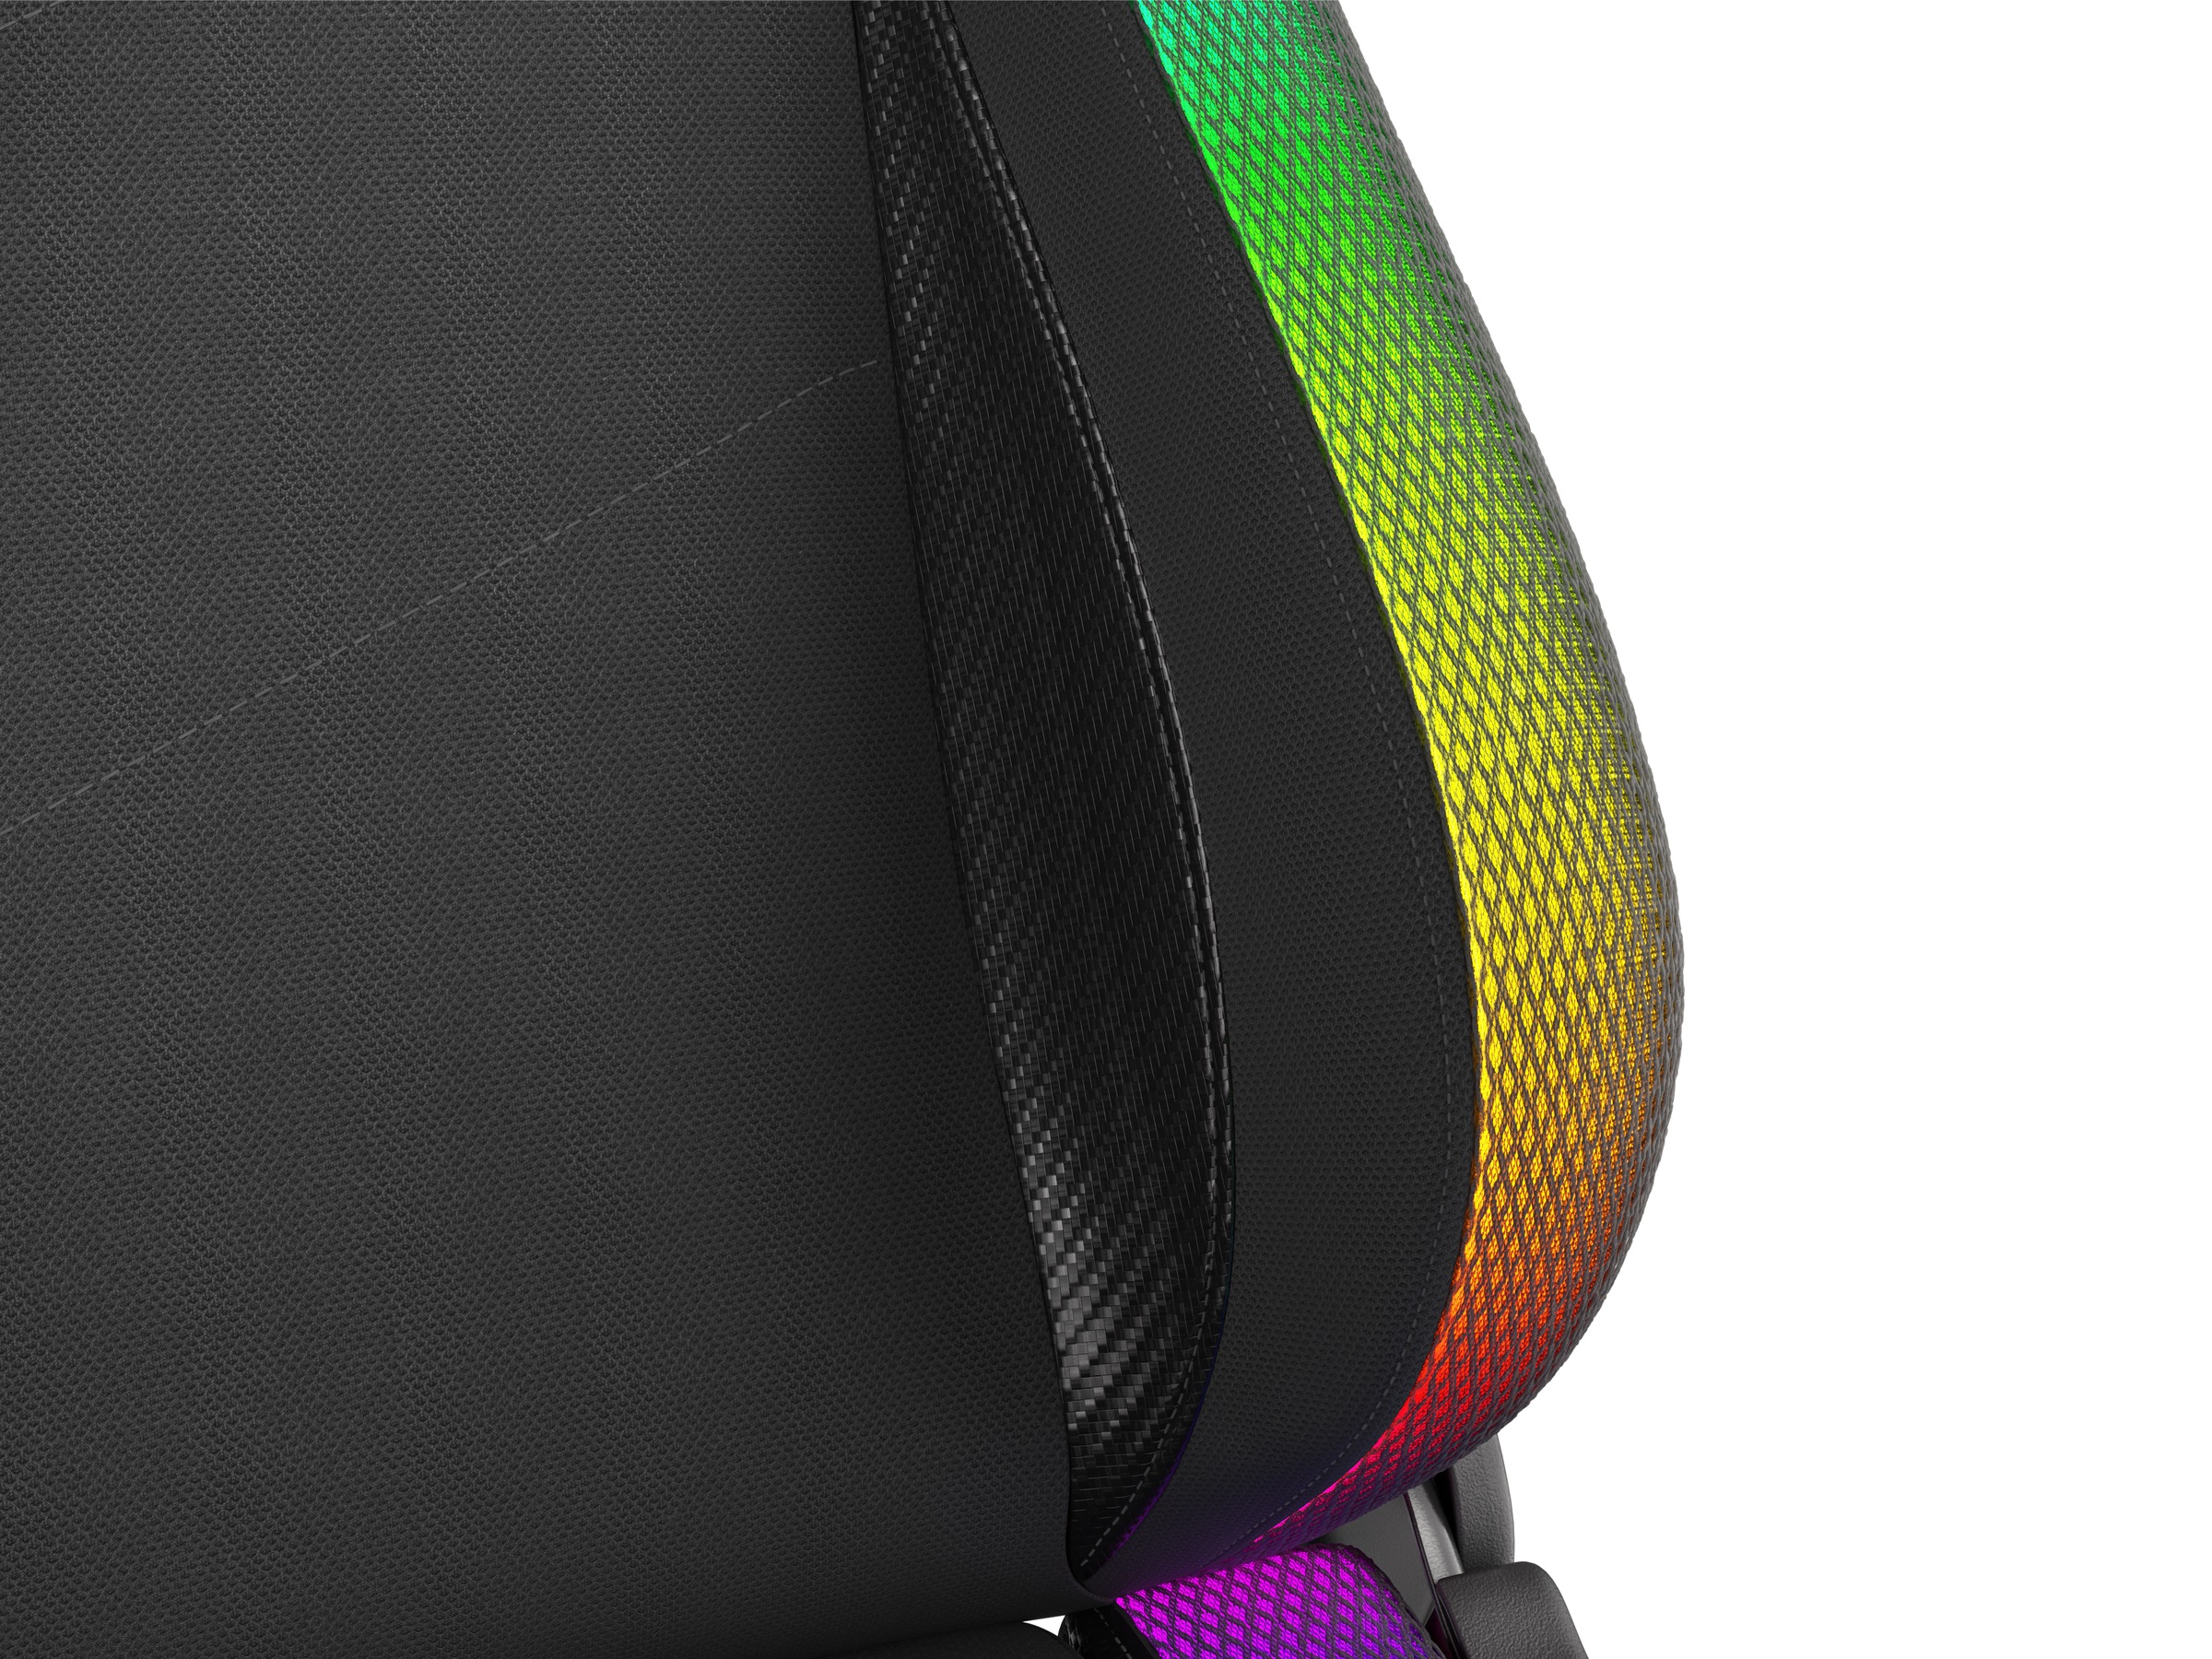 Genesis Gaming-Stuhl »TRIT 500 RGB schwarz«